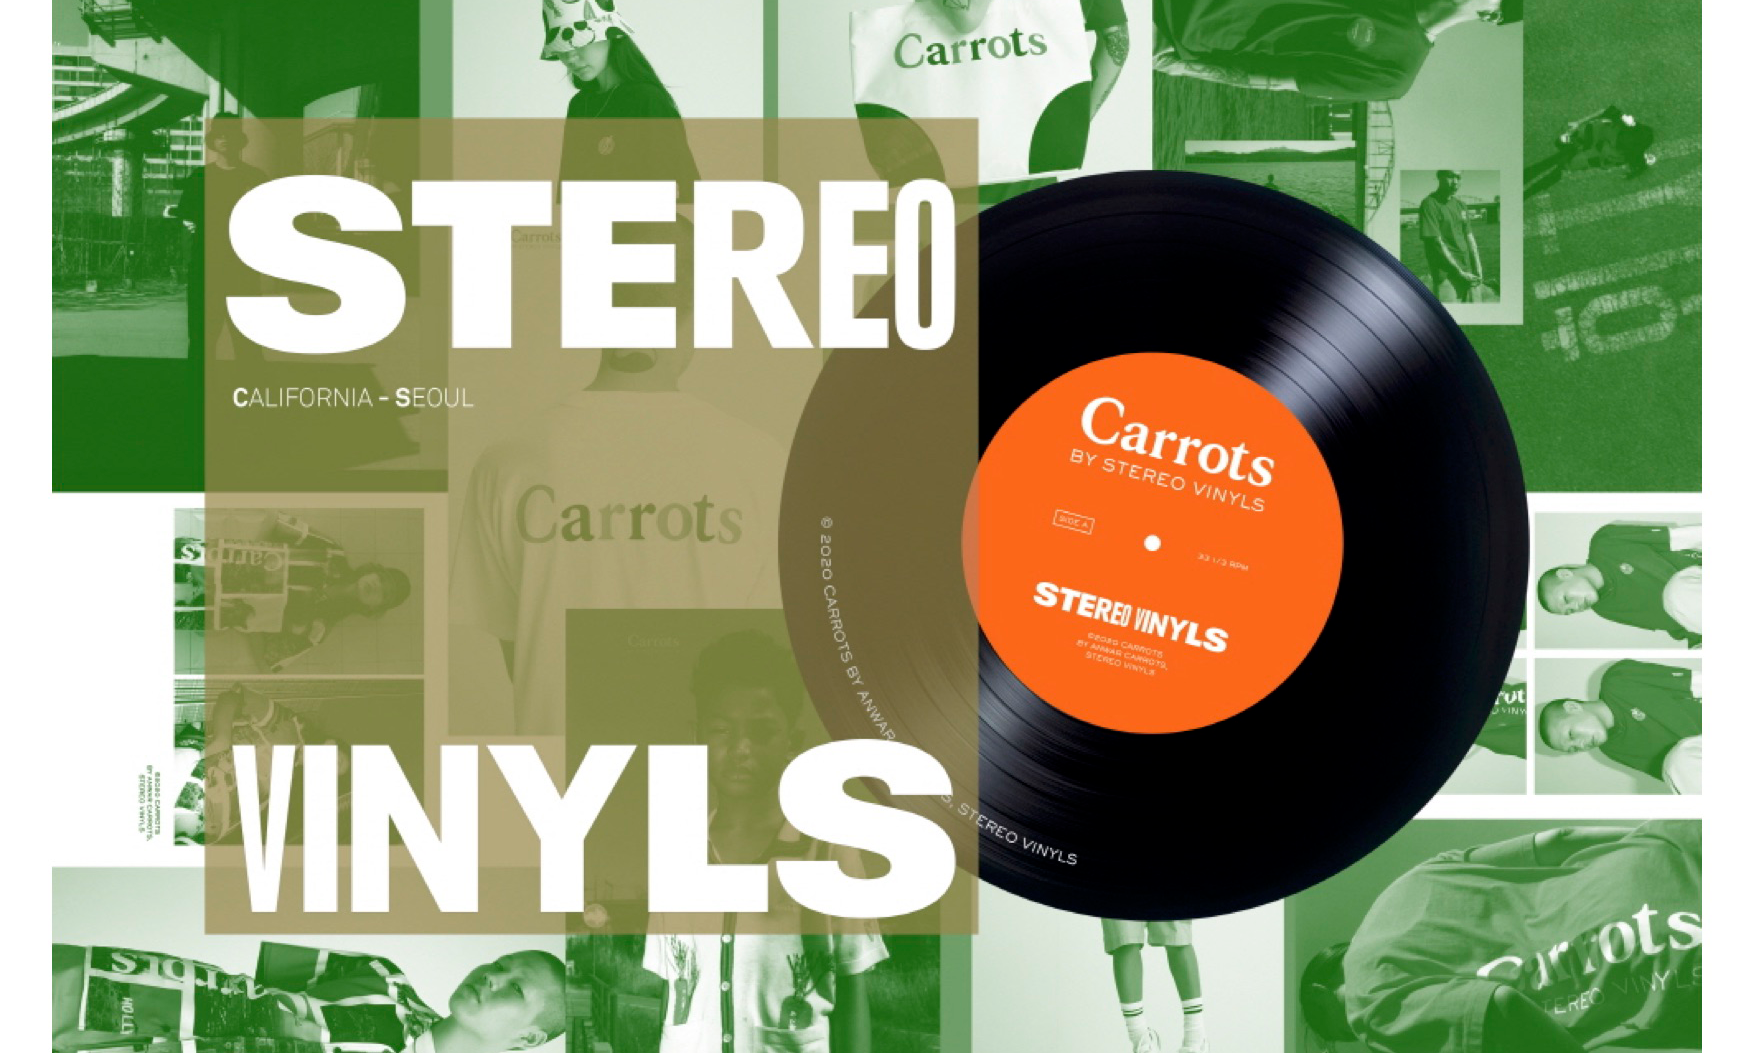 首尔街头品牌 Stereo Vinyls 联乘 Carrots™️ 系列即将发布